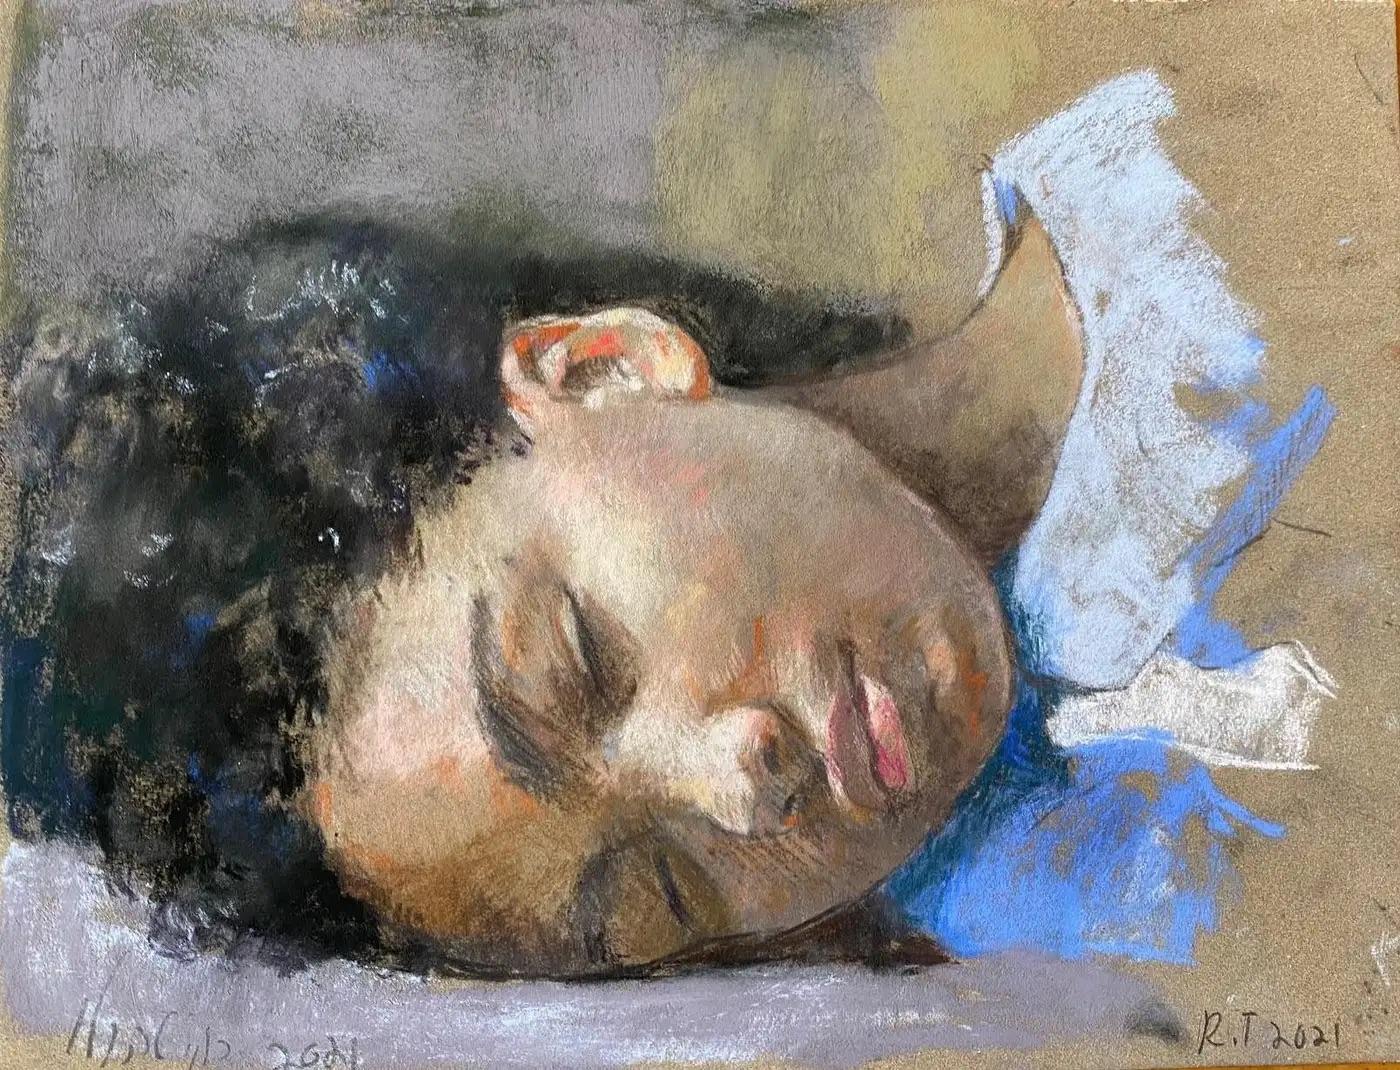 "Lovina Sleeping" de Roni Taharlev est un portrait intime et tendre qui résume la quiétude de son sujet. Ce pastel à l'huile sur papier de 15,5 x 18 pouces est réalisé avec des touches douces et harmonieuses, mettant en valeur le repos paisible de